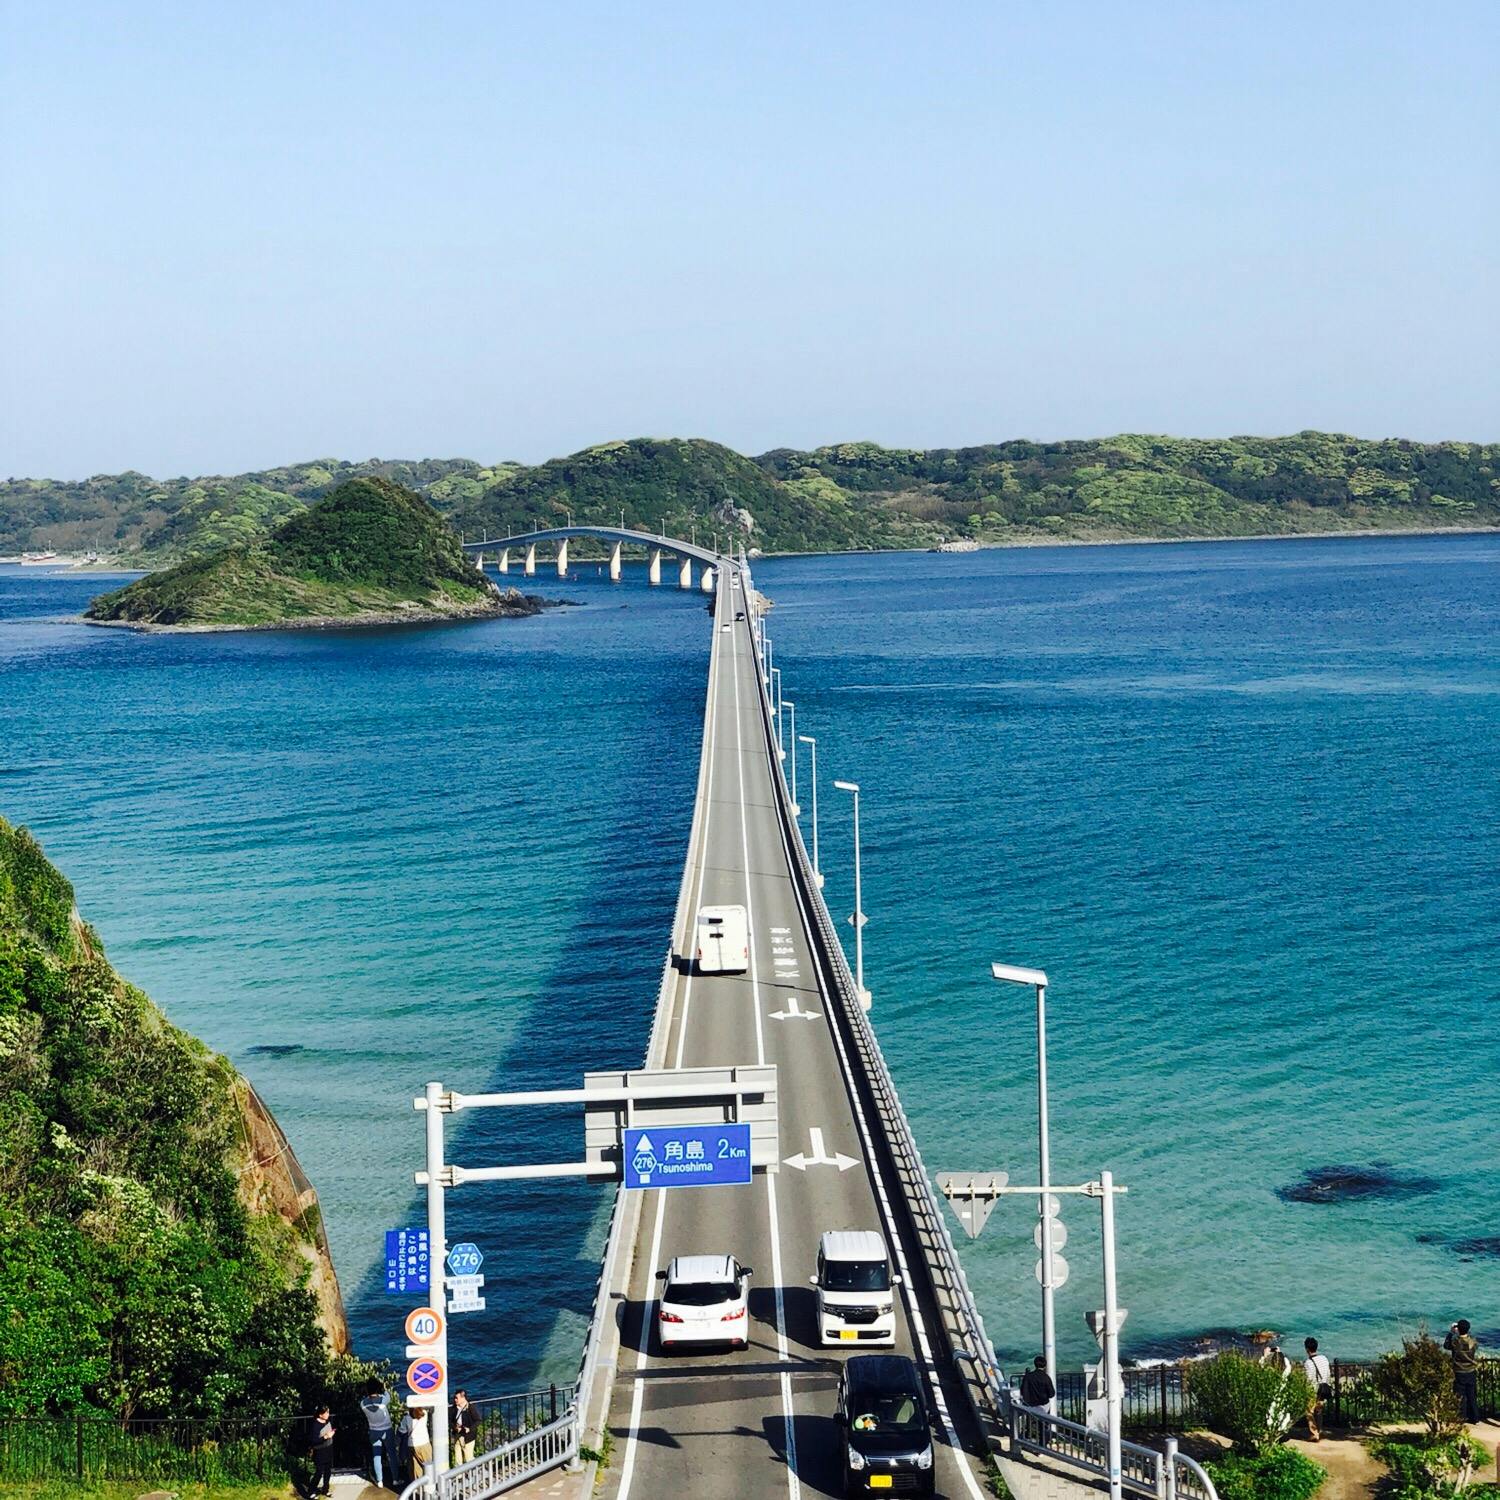 角島大橋 つのしまおおはし の投稿写真 感想 みどころ ここオープンカーで走りたい 角島大橋 トリップノート